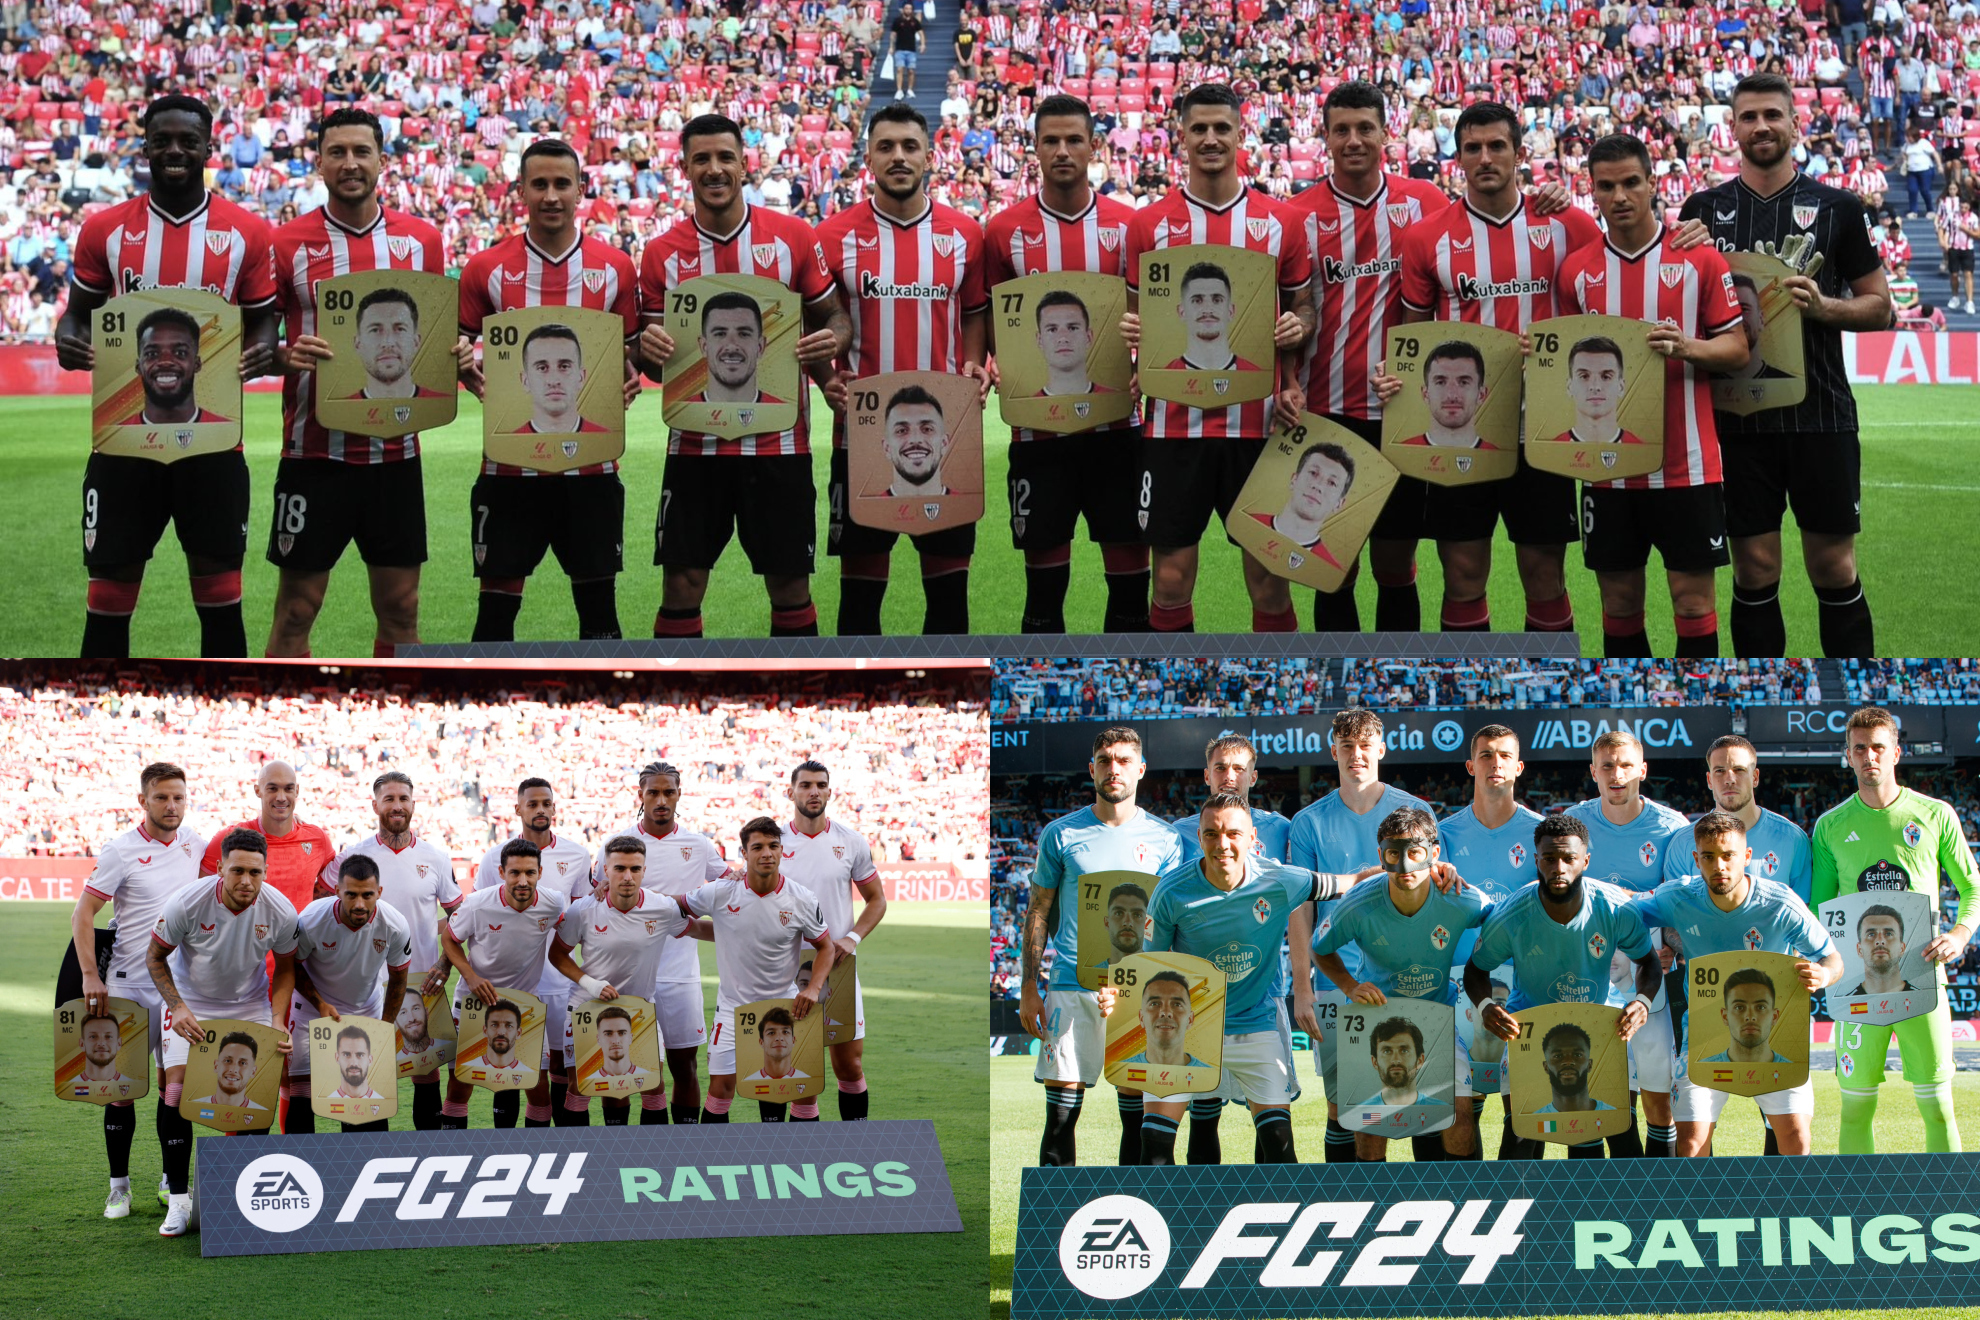 Los jugadores de Athletic, Sevilla y Celta, con sus cartas de EA Sports FC, los rojiblancos sin banderas.